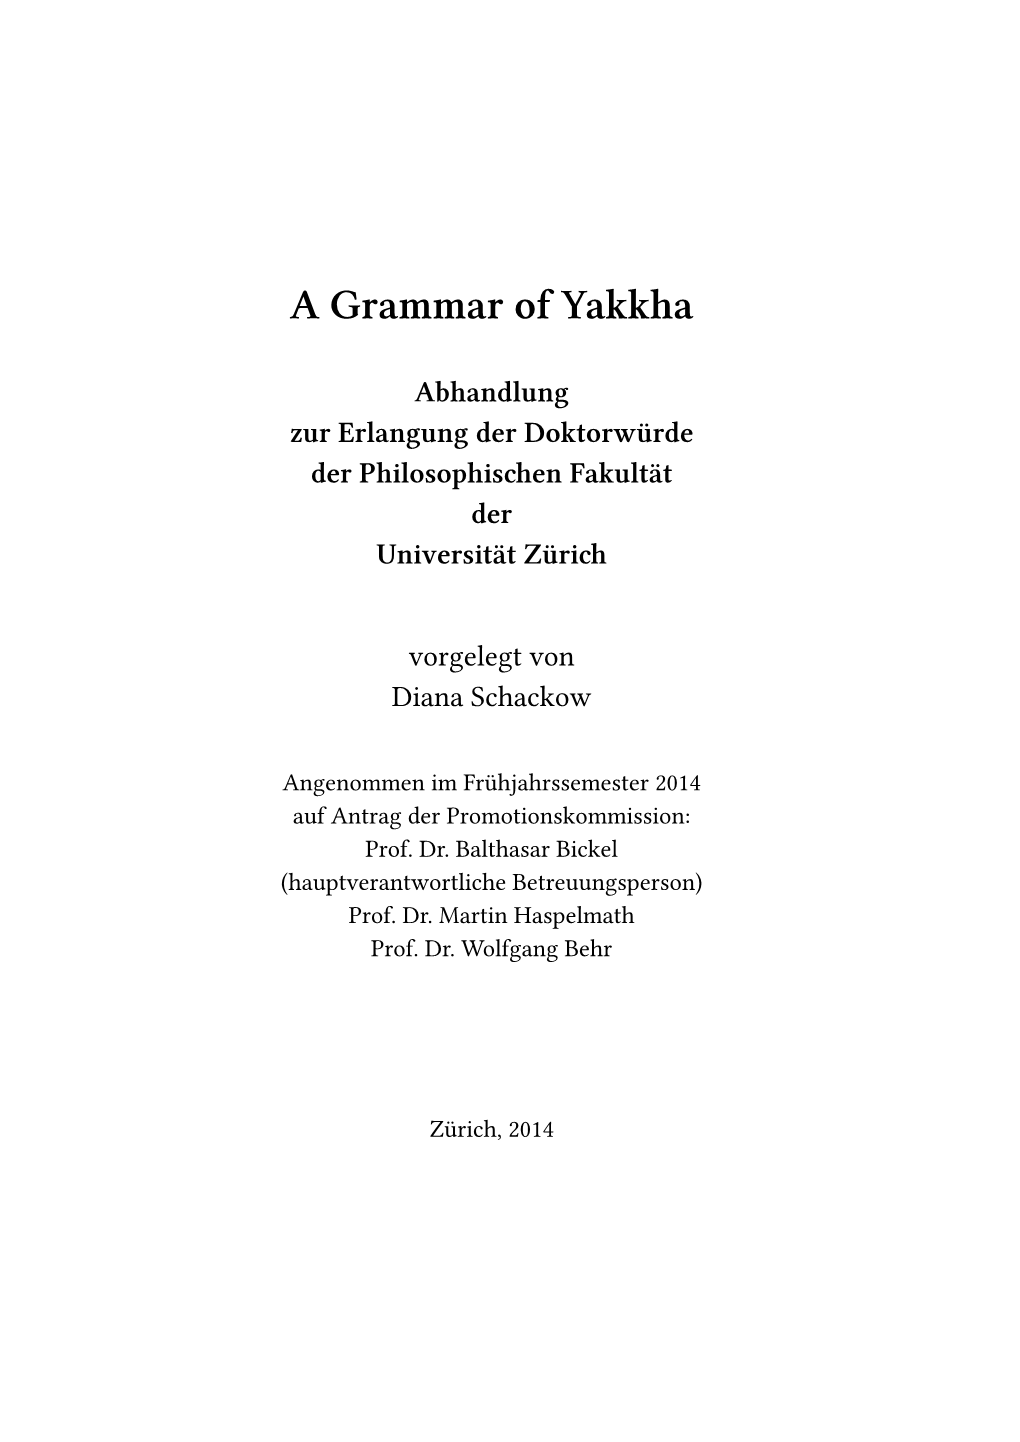 A Grammar of Yakkha